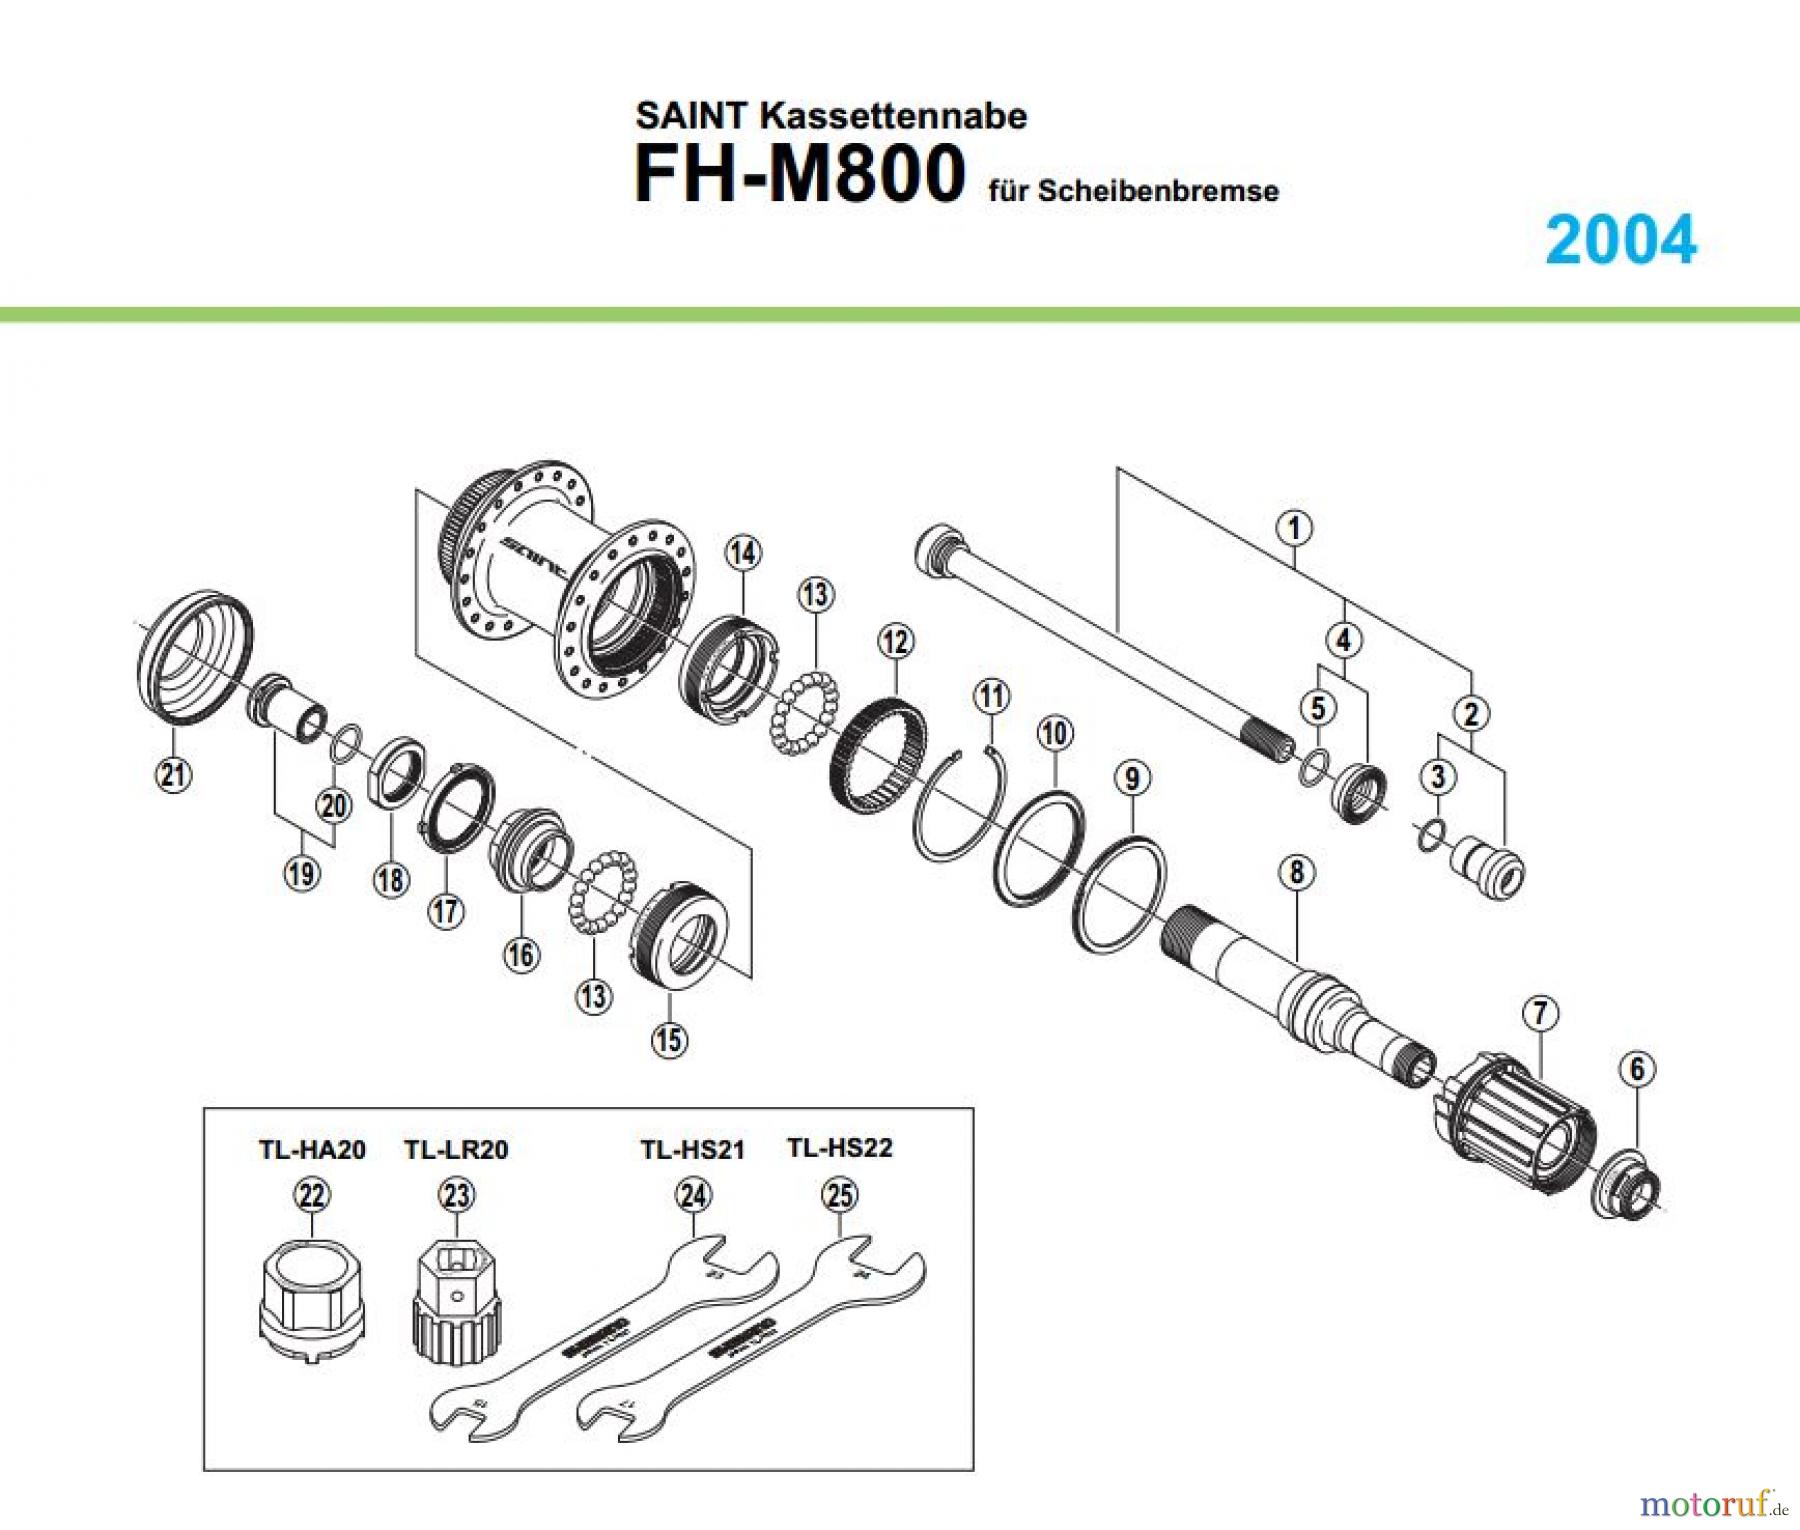  Shimano FH Free Hub - Freilaufnabe FH-M800, 2004 SAINT Kassettennabe für Scheibenbremse